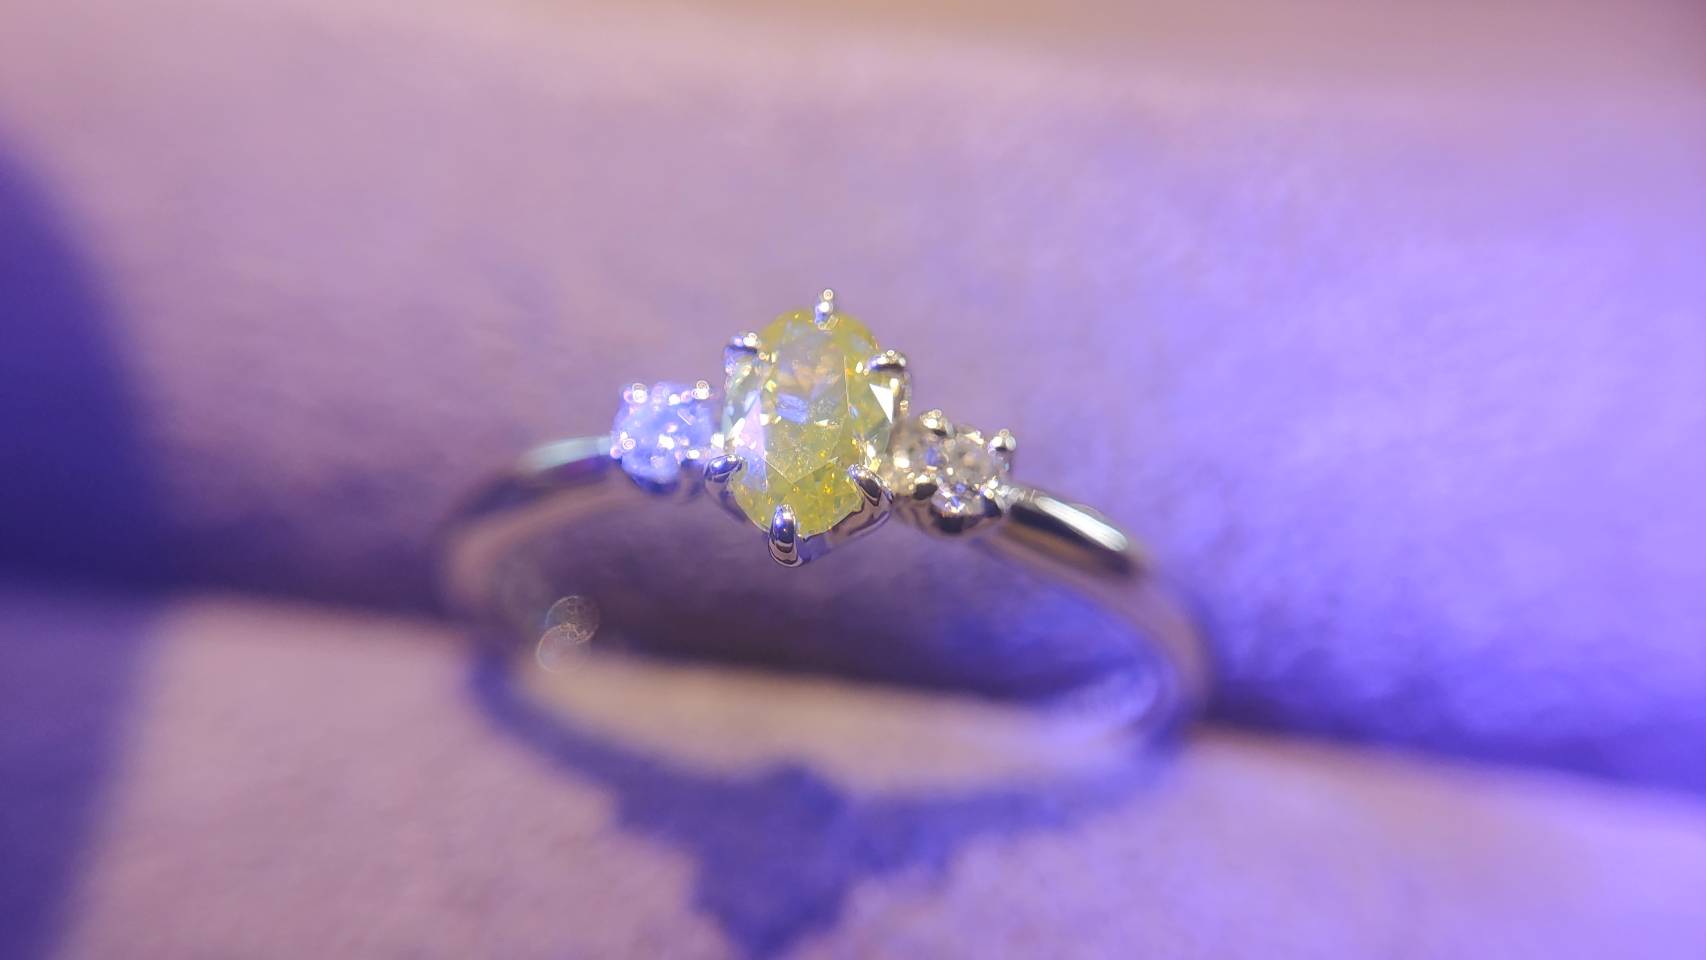 ストロングイエロウィッシュグリーンの蛍光性を持つファンシーインテンスイエローダイヤモンドを使用した婚約指輪